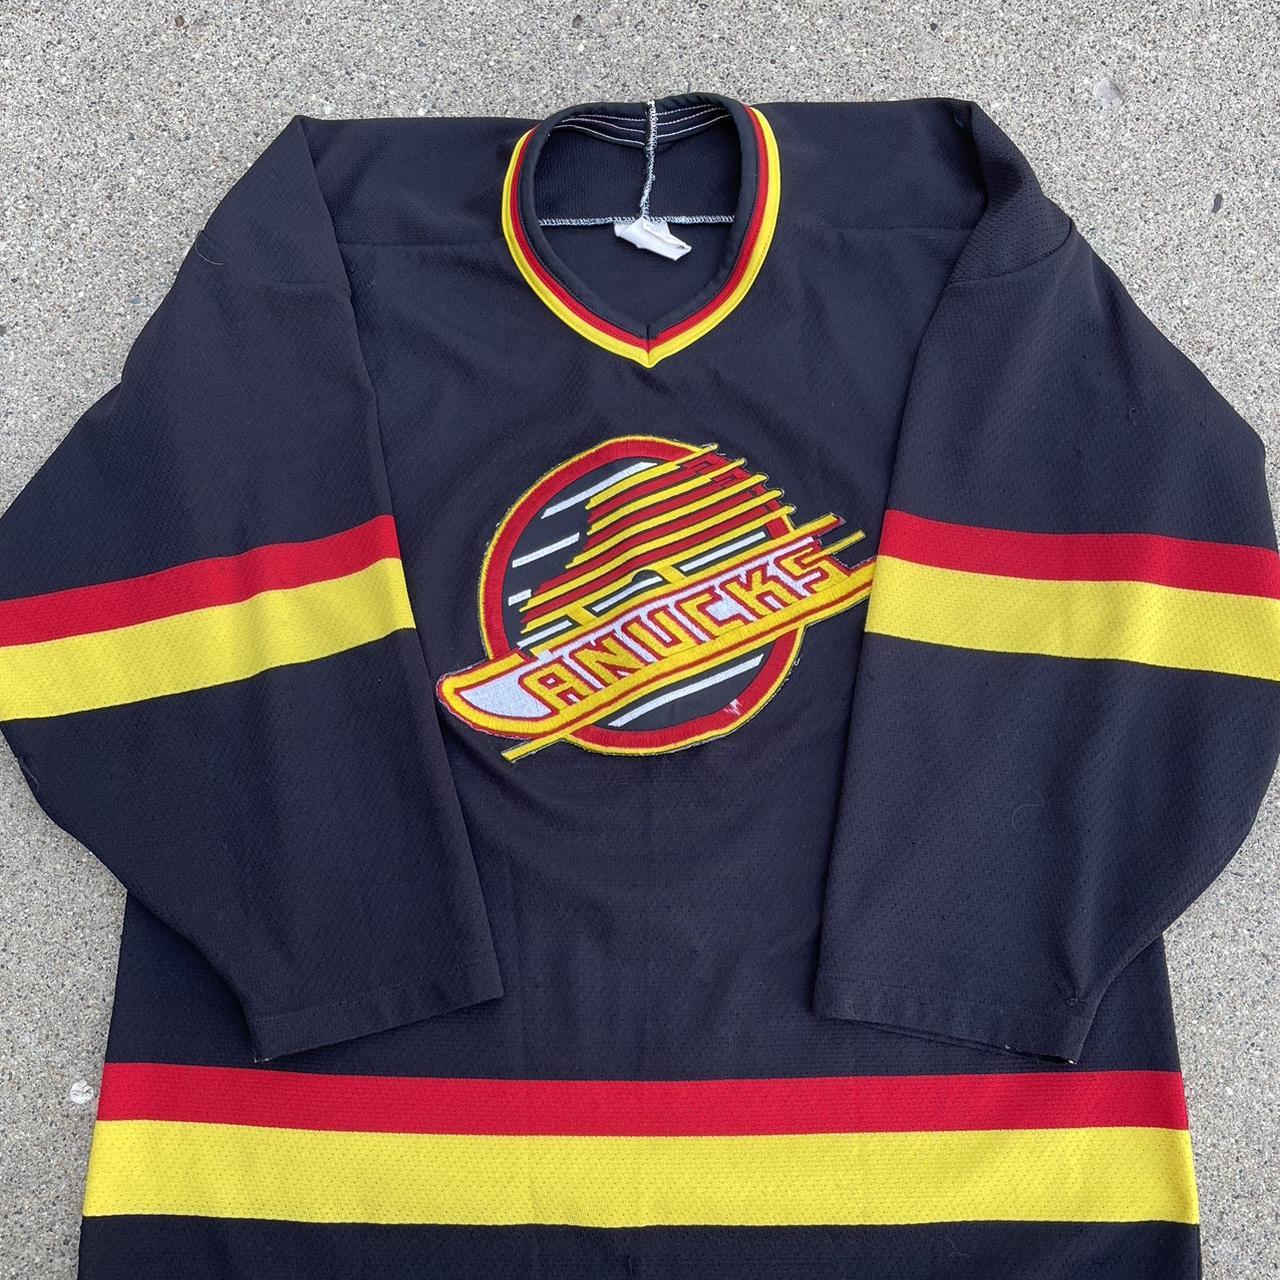 Vintage Vancouver Canucks CCM Hockey Jersey